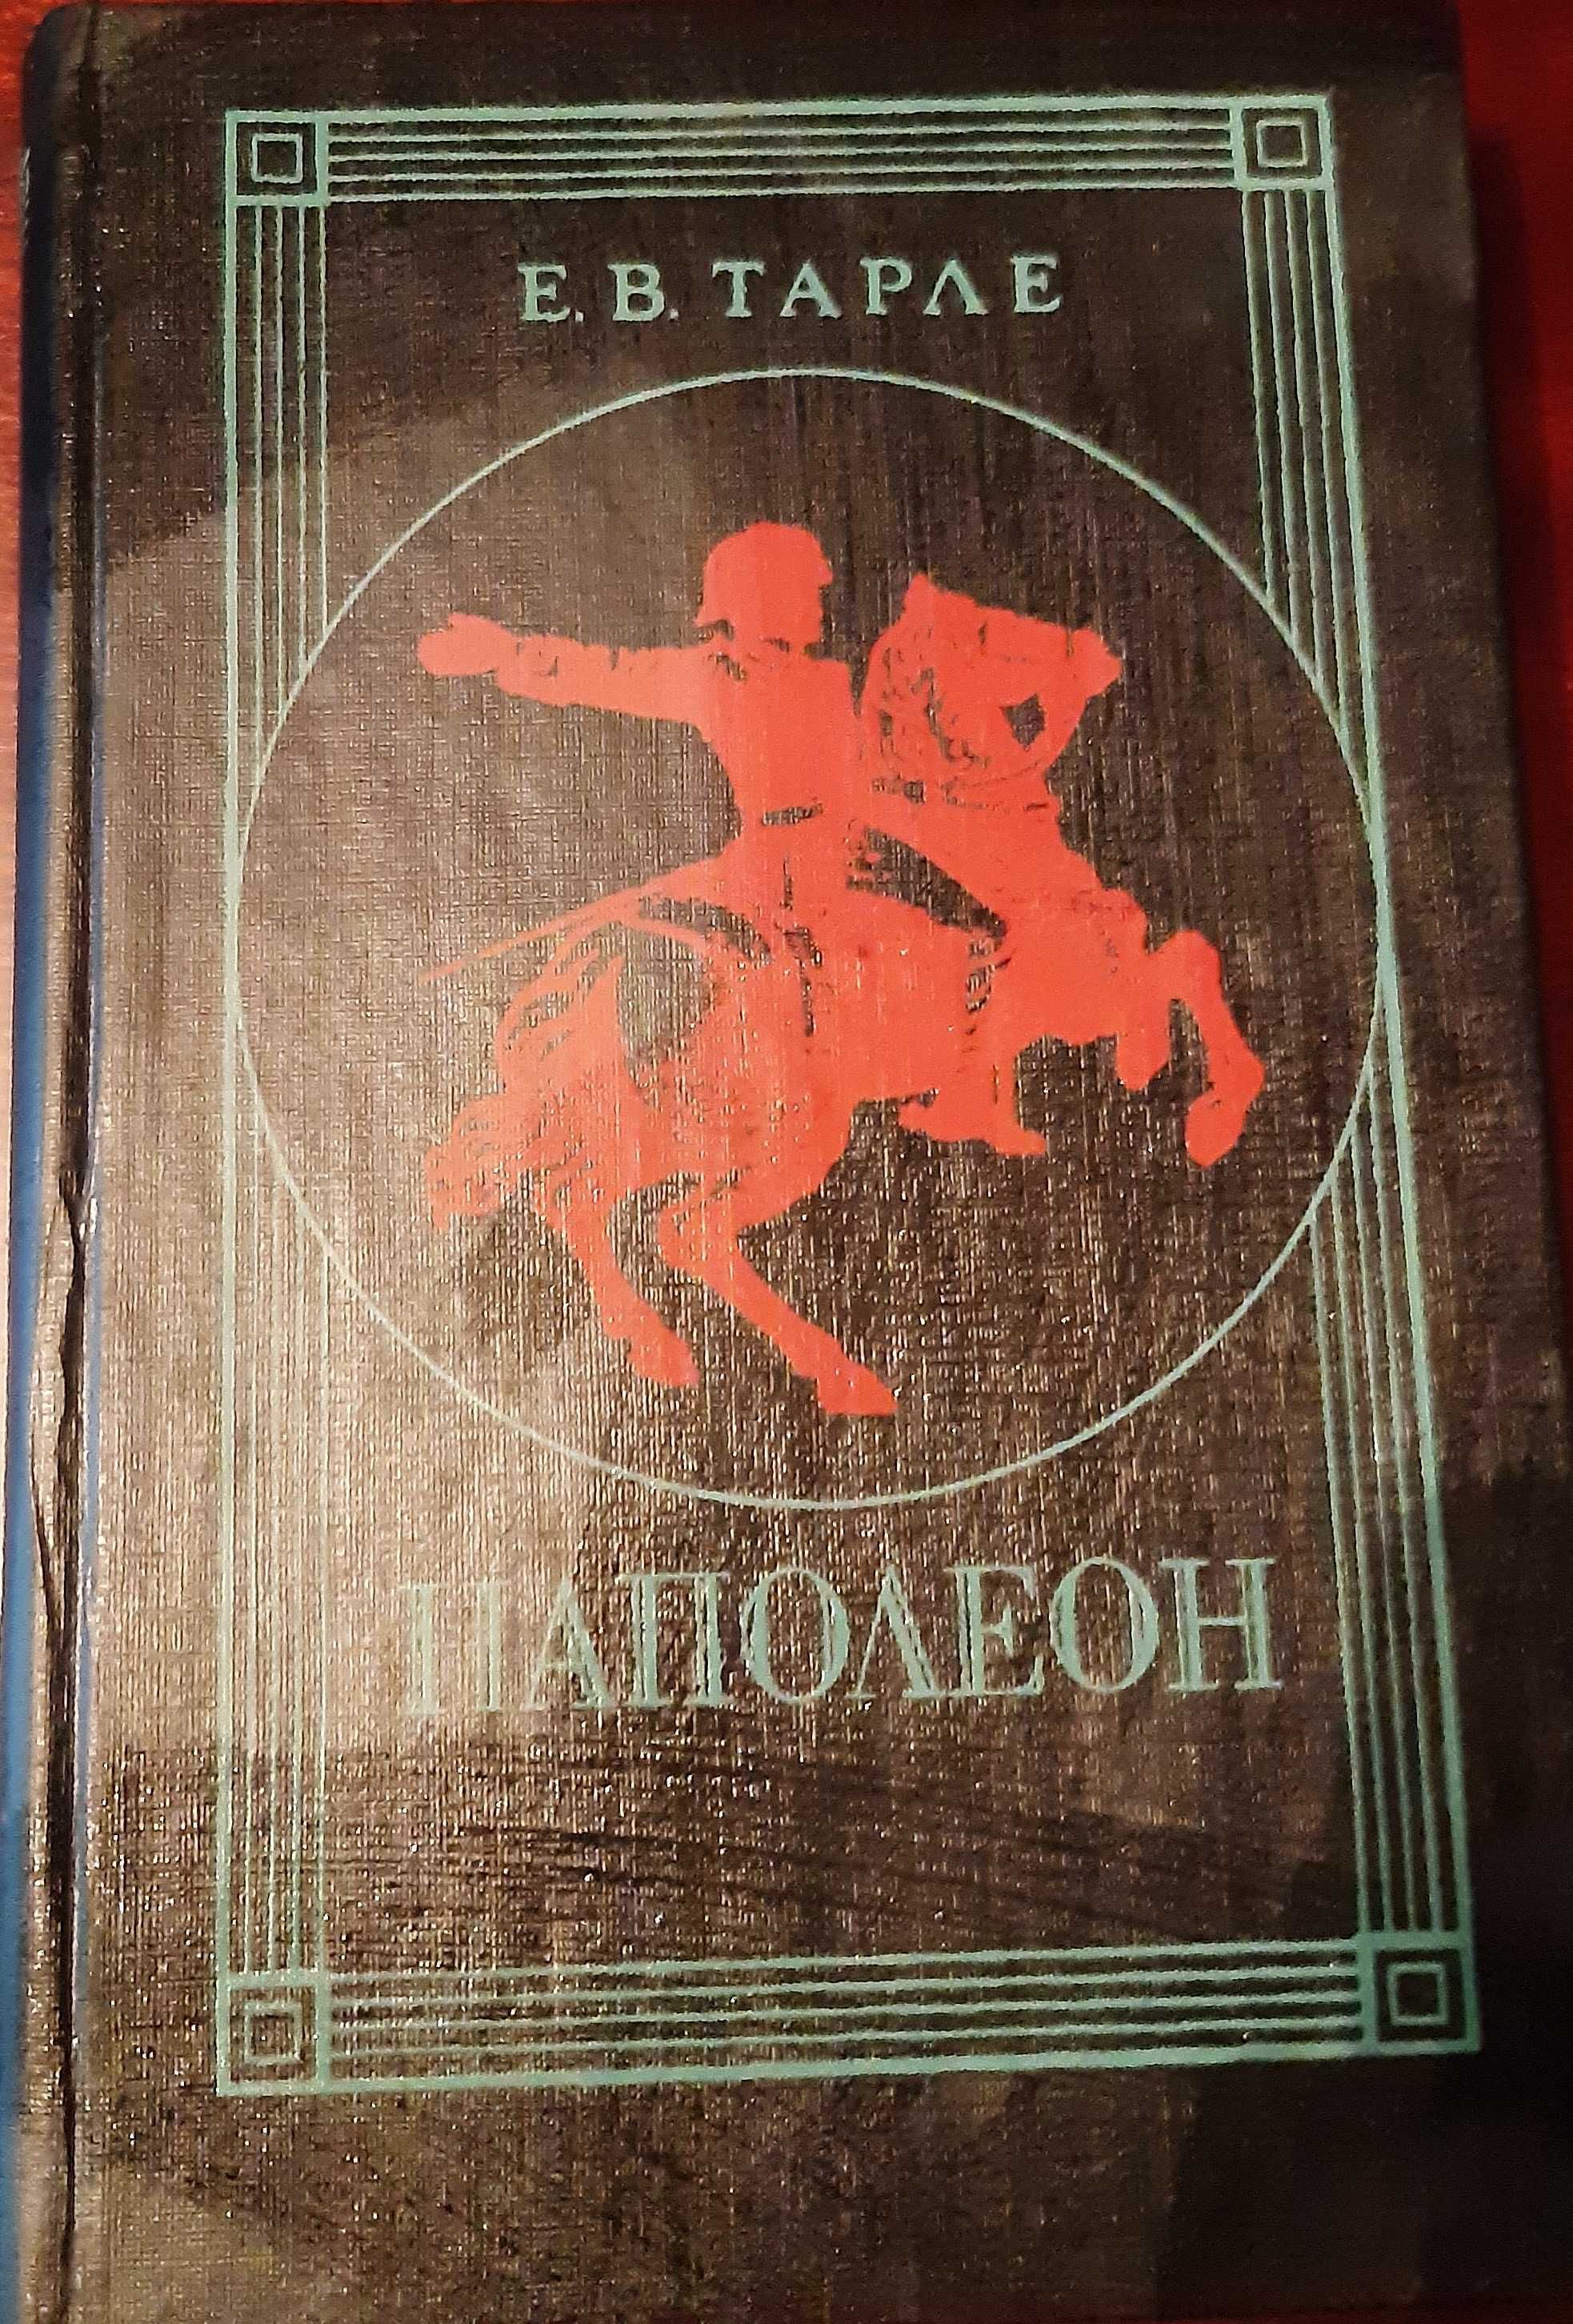 Книги Хмельницкий,Наполеон,И.Грозный,Чингисхан